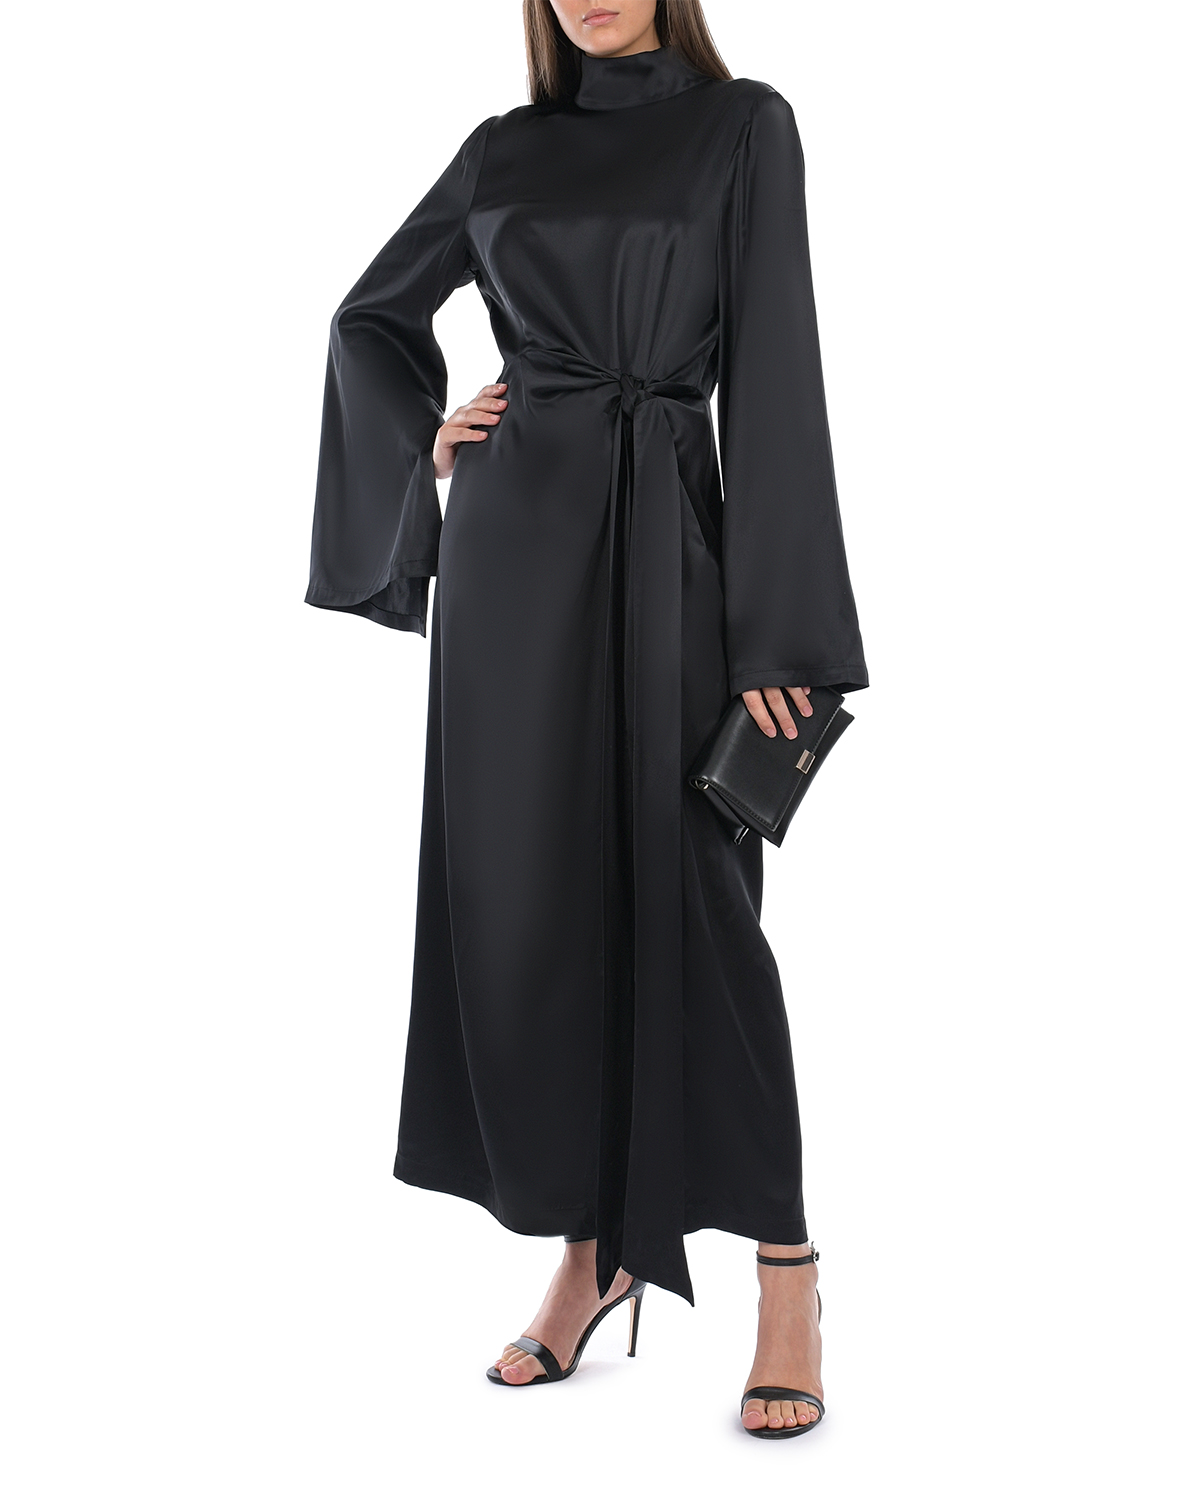 Черное платье с длинными расклешенными рукавами ROHE, размер 44, цвет черный - фото 3